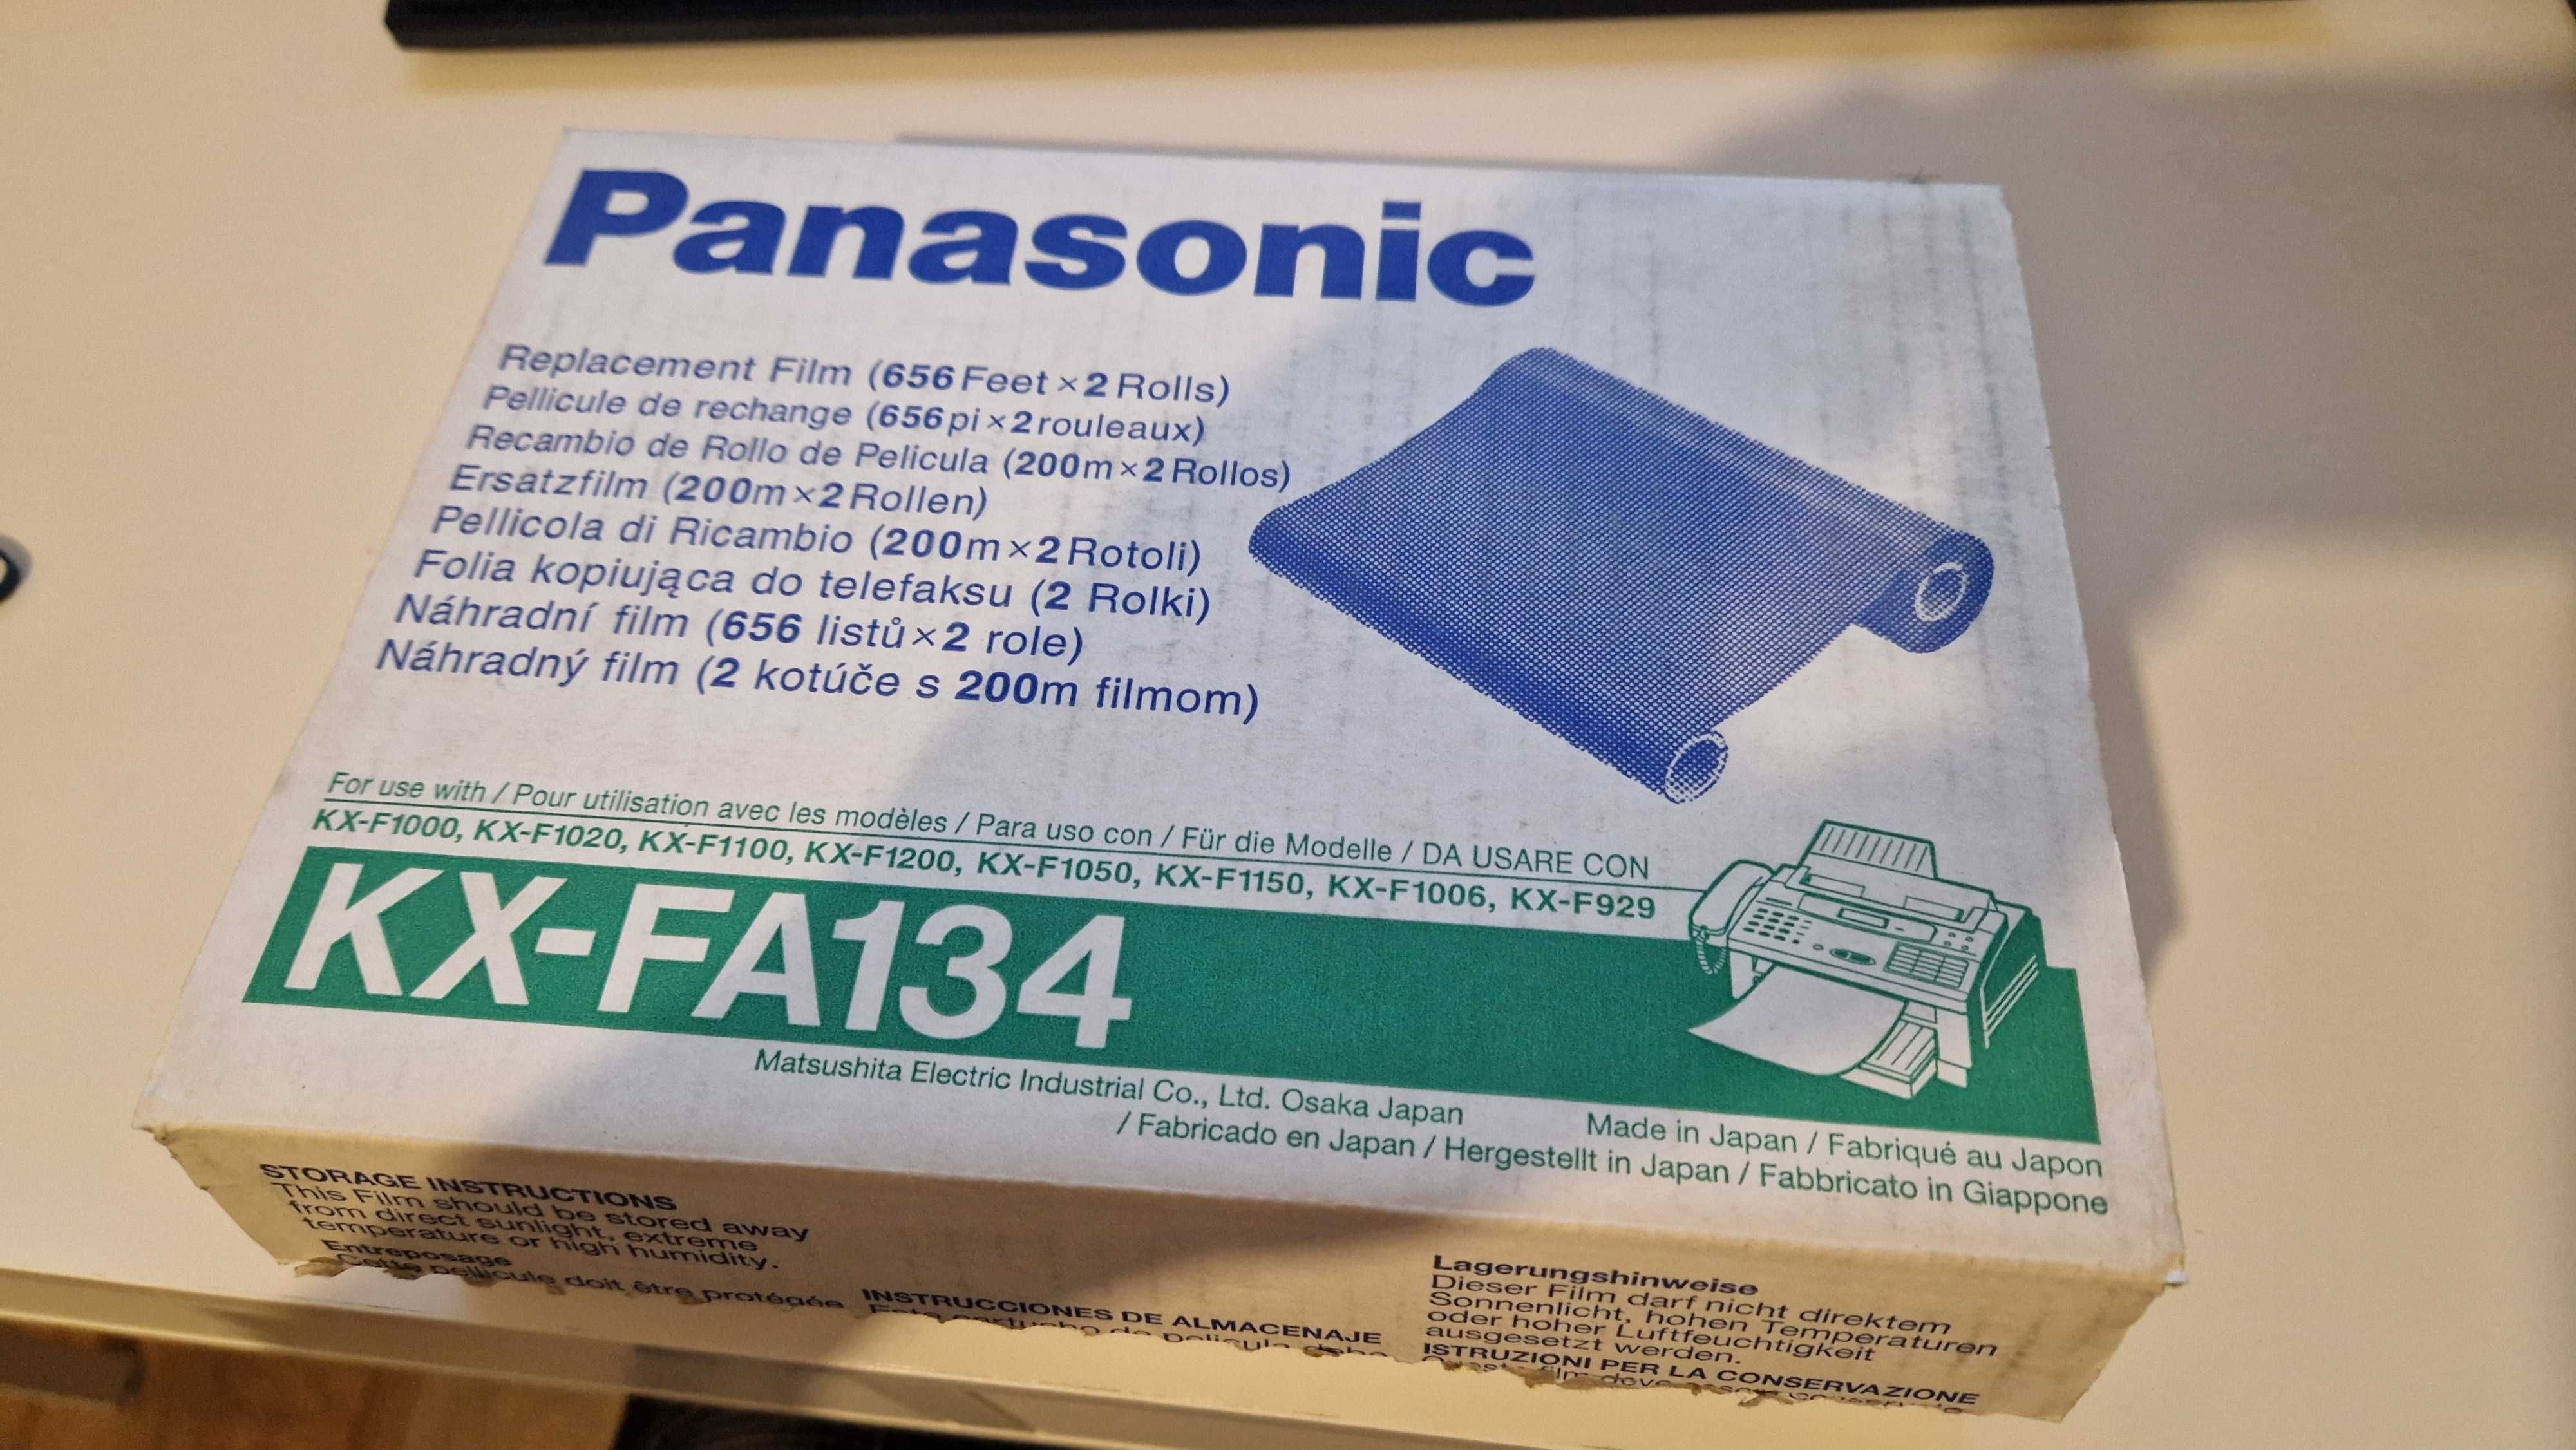 Panasonic KX-FA134 Folia kopiująca do telefaksu